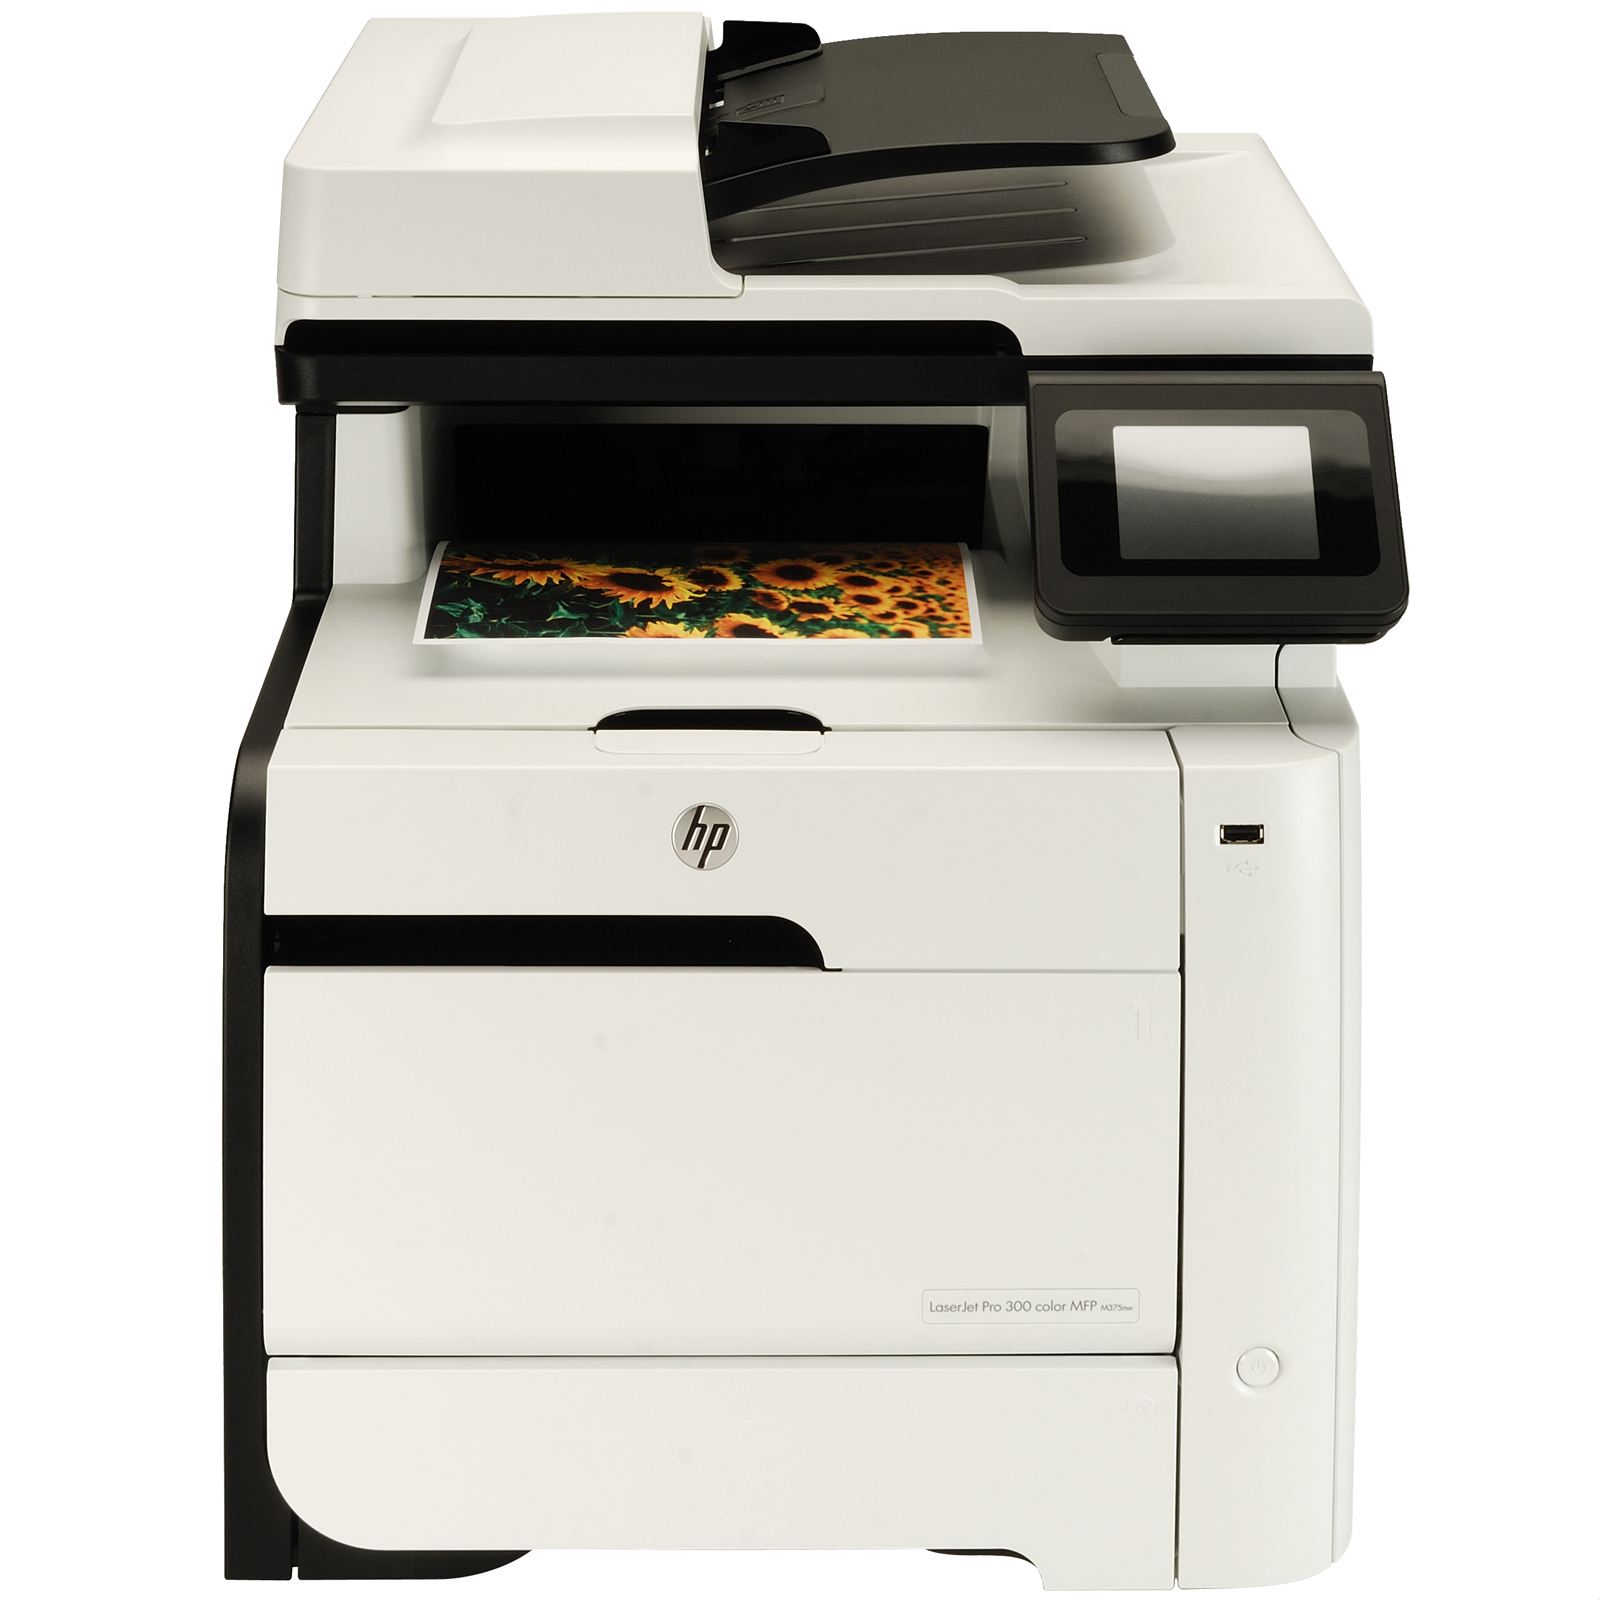 Tiskárna HP LaserJet Pro 300 color MFP M375nw